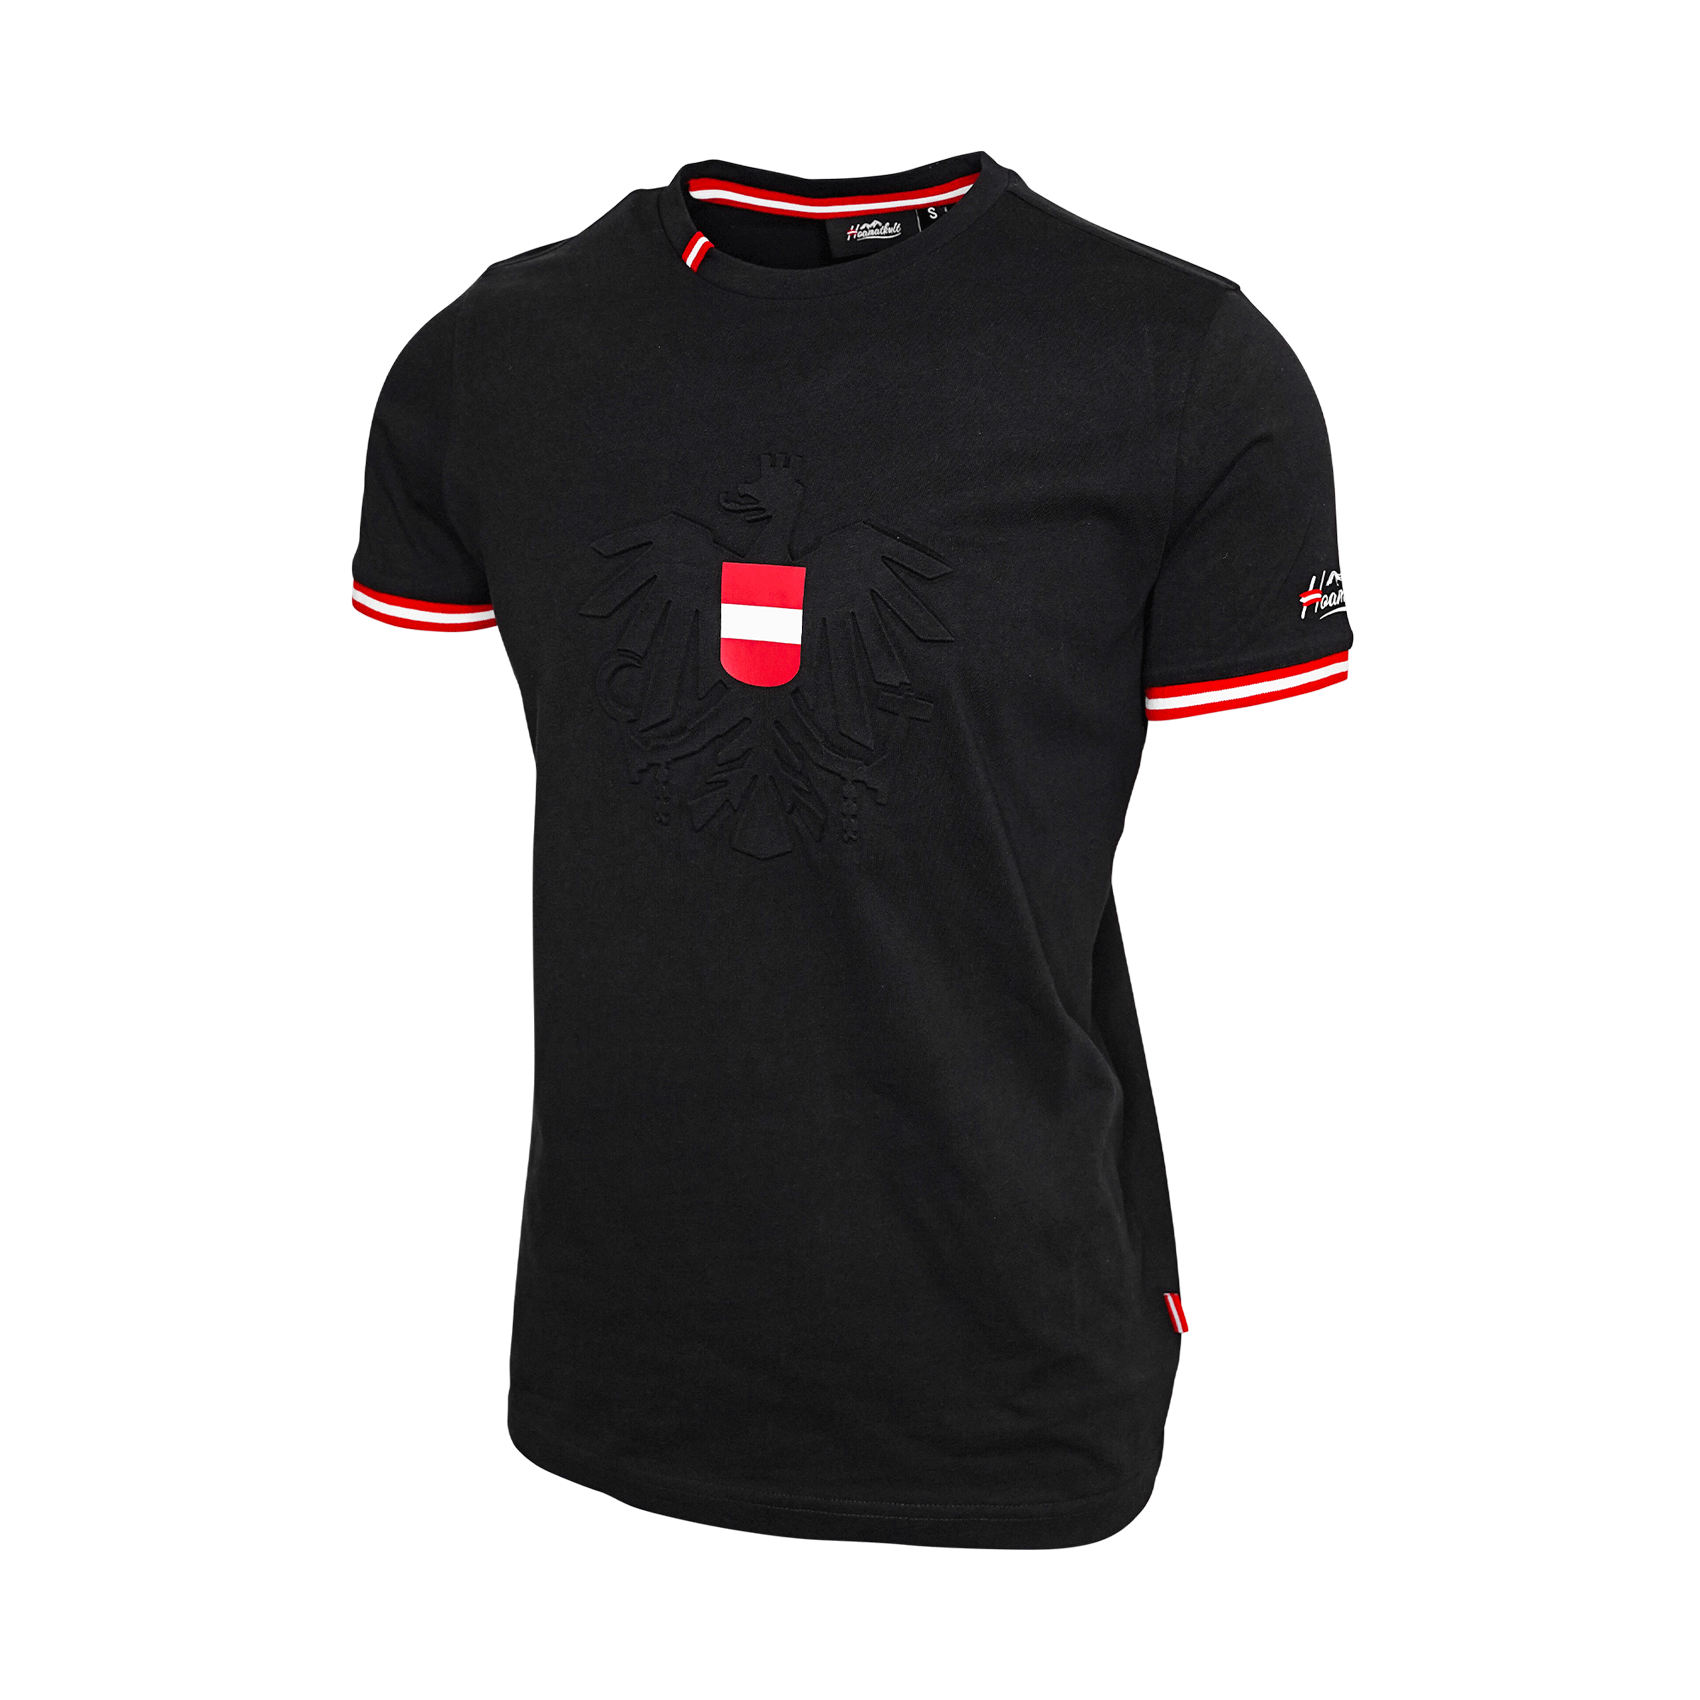 Österreich Adler Herren T-Shirt schwarz